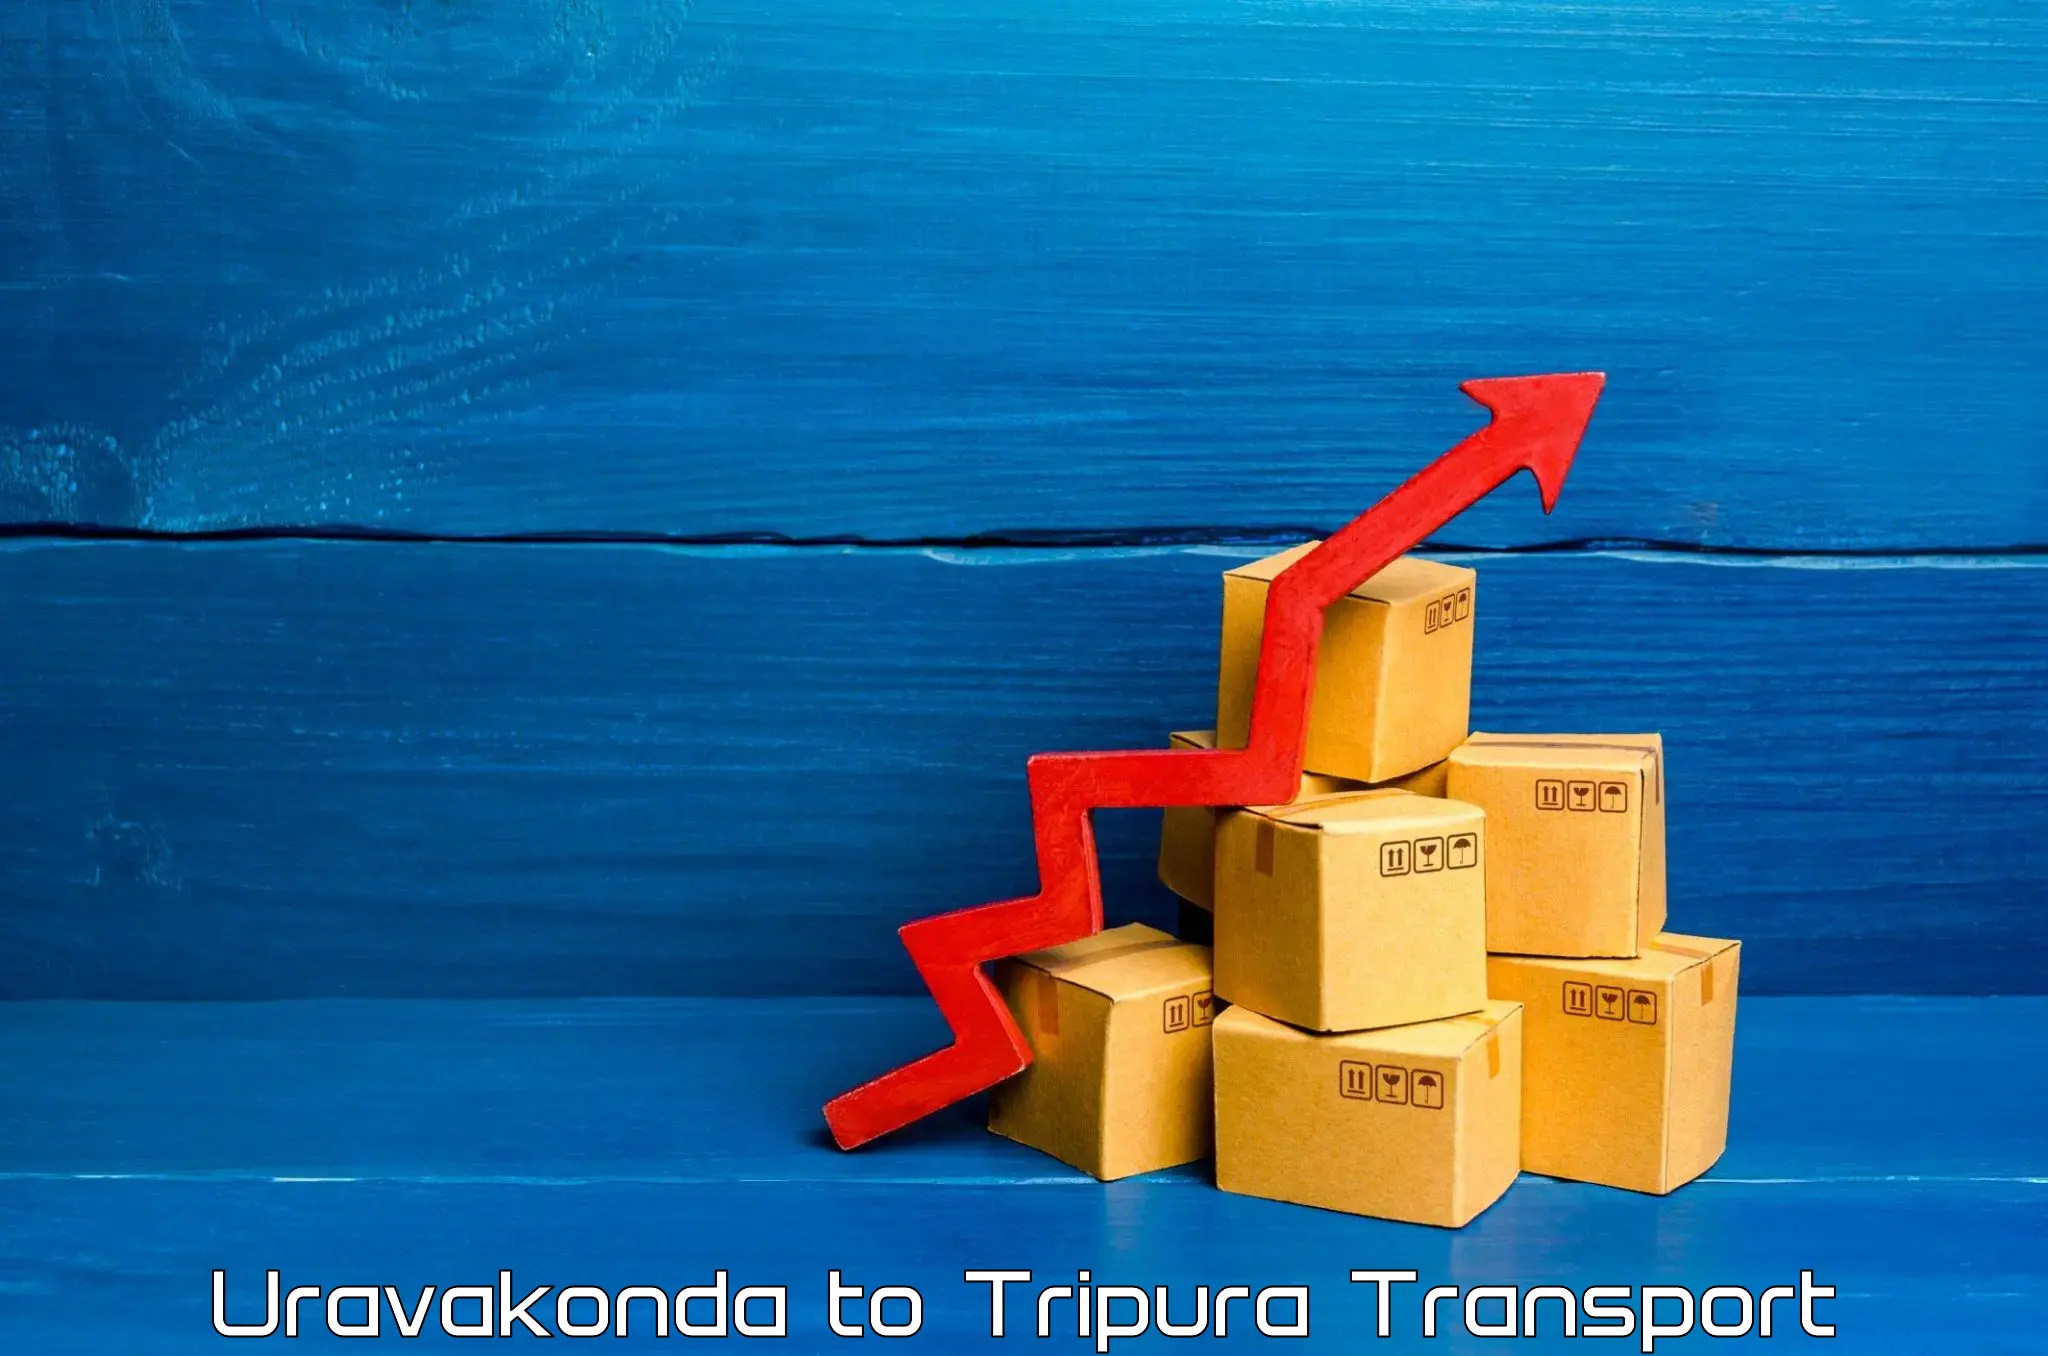 Cargo train transport services Uravakonda to Udaipur Tripura